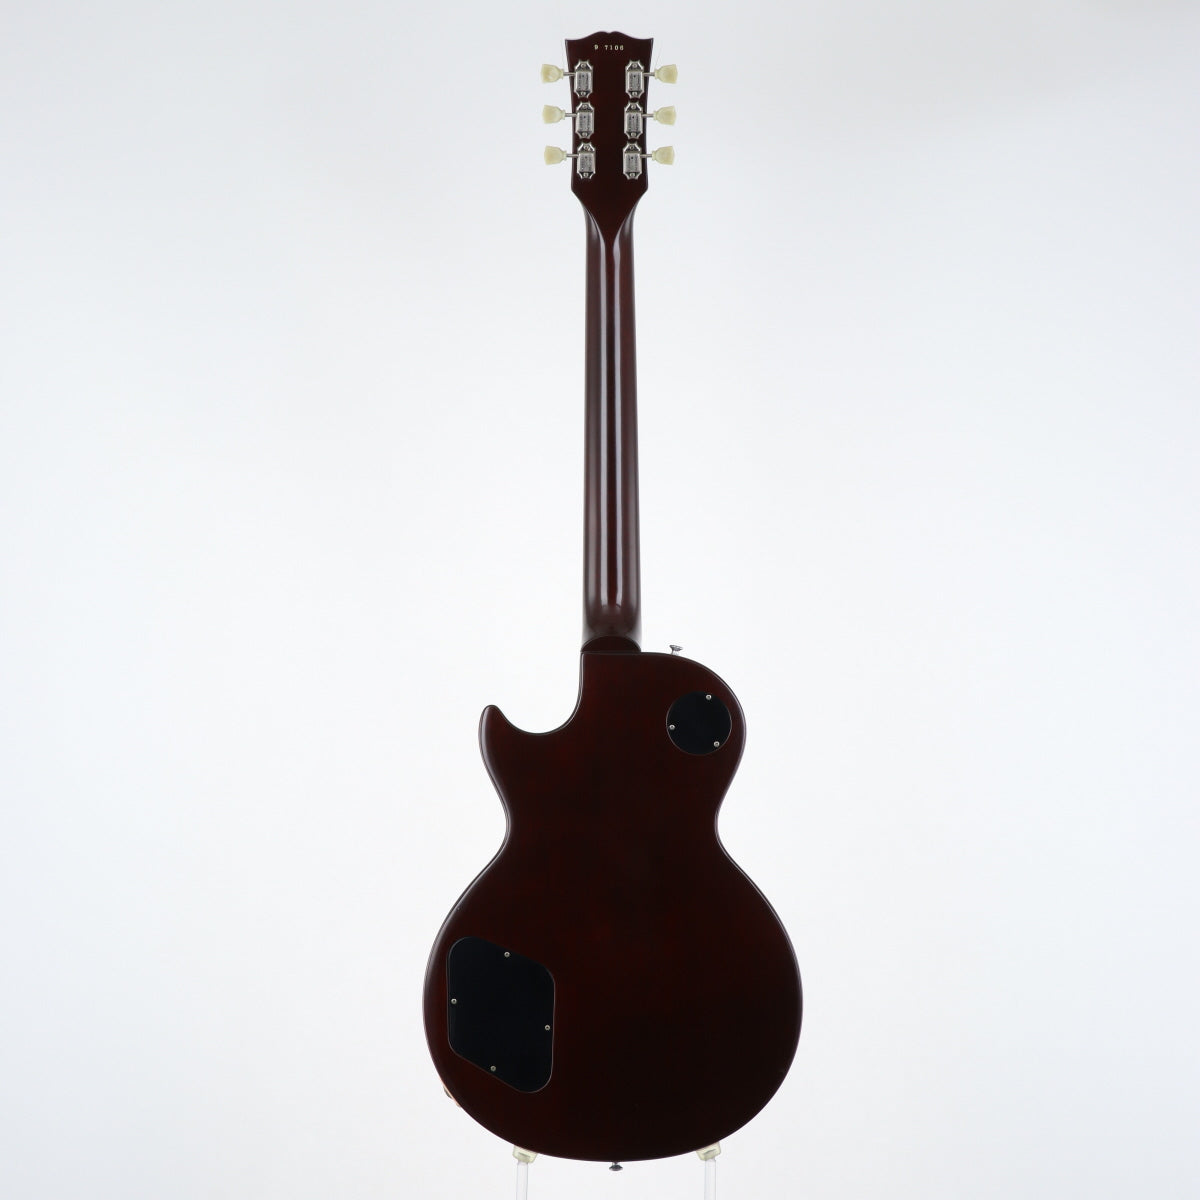 [SN 9 7106] USED Gibson Custom Shop / HC 1959 Les Paul Standard Reissue Dessert Burst [20]